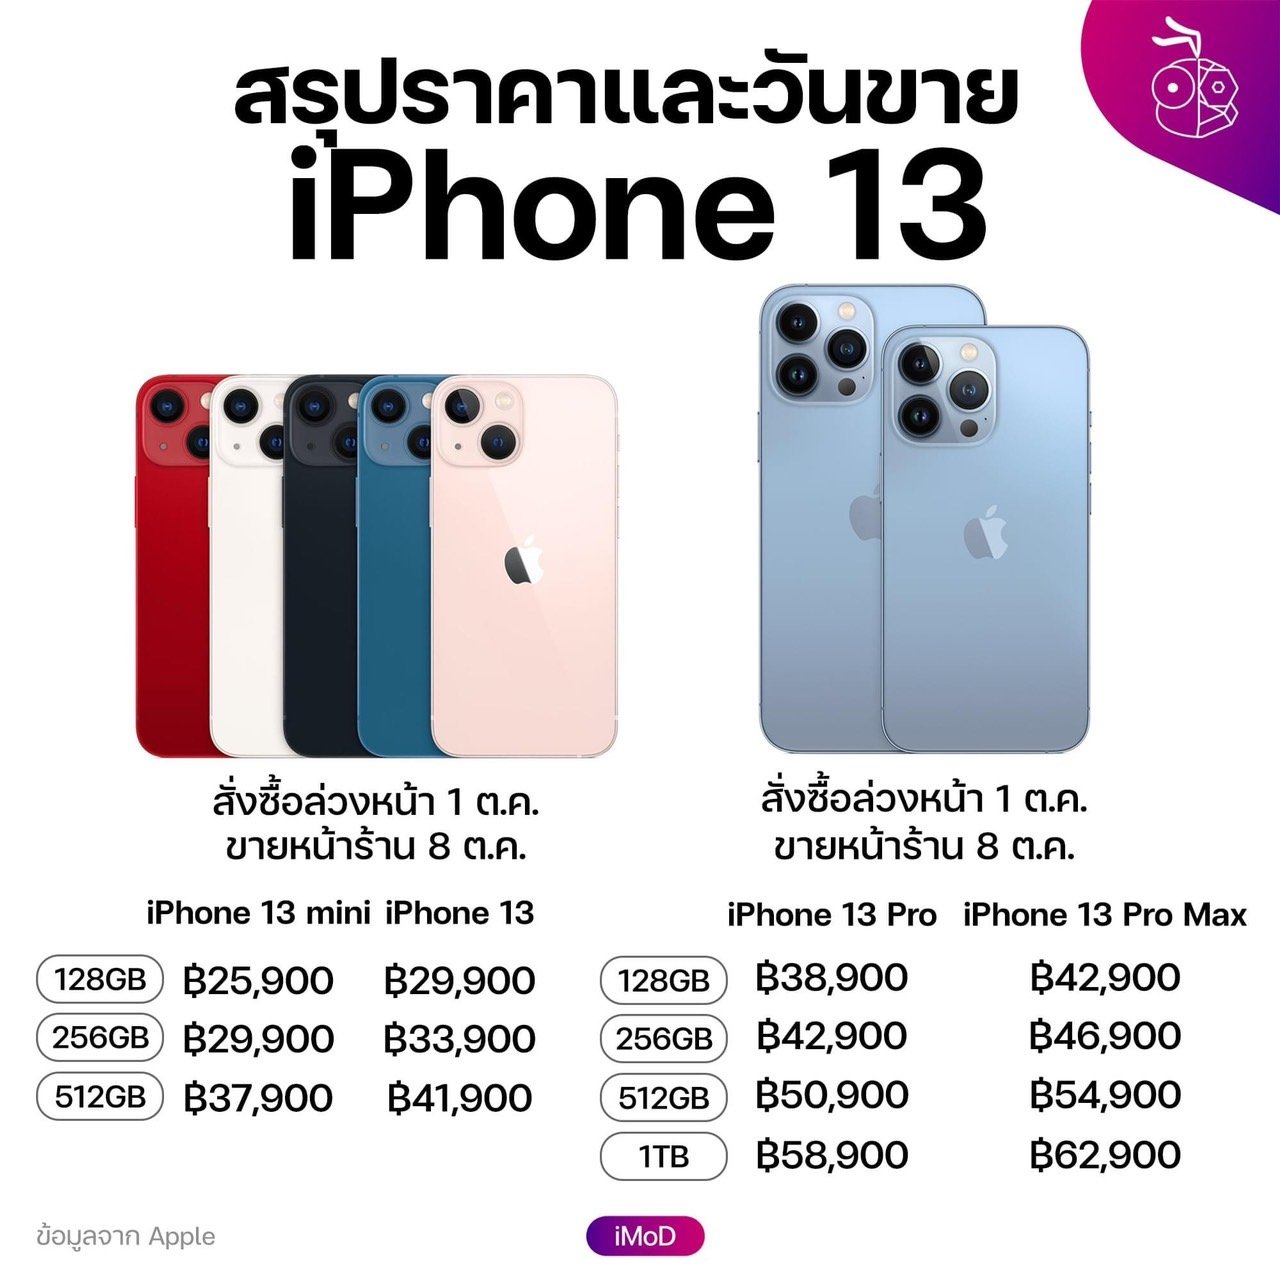 สรุปราคาขายในไทย iPhone 13, iPhone 13 mini, iPhone 13 Pro, iPhone 13 Pro Max